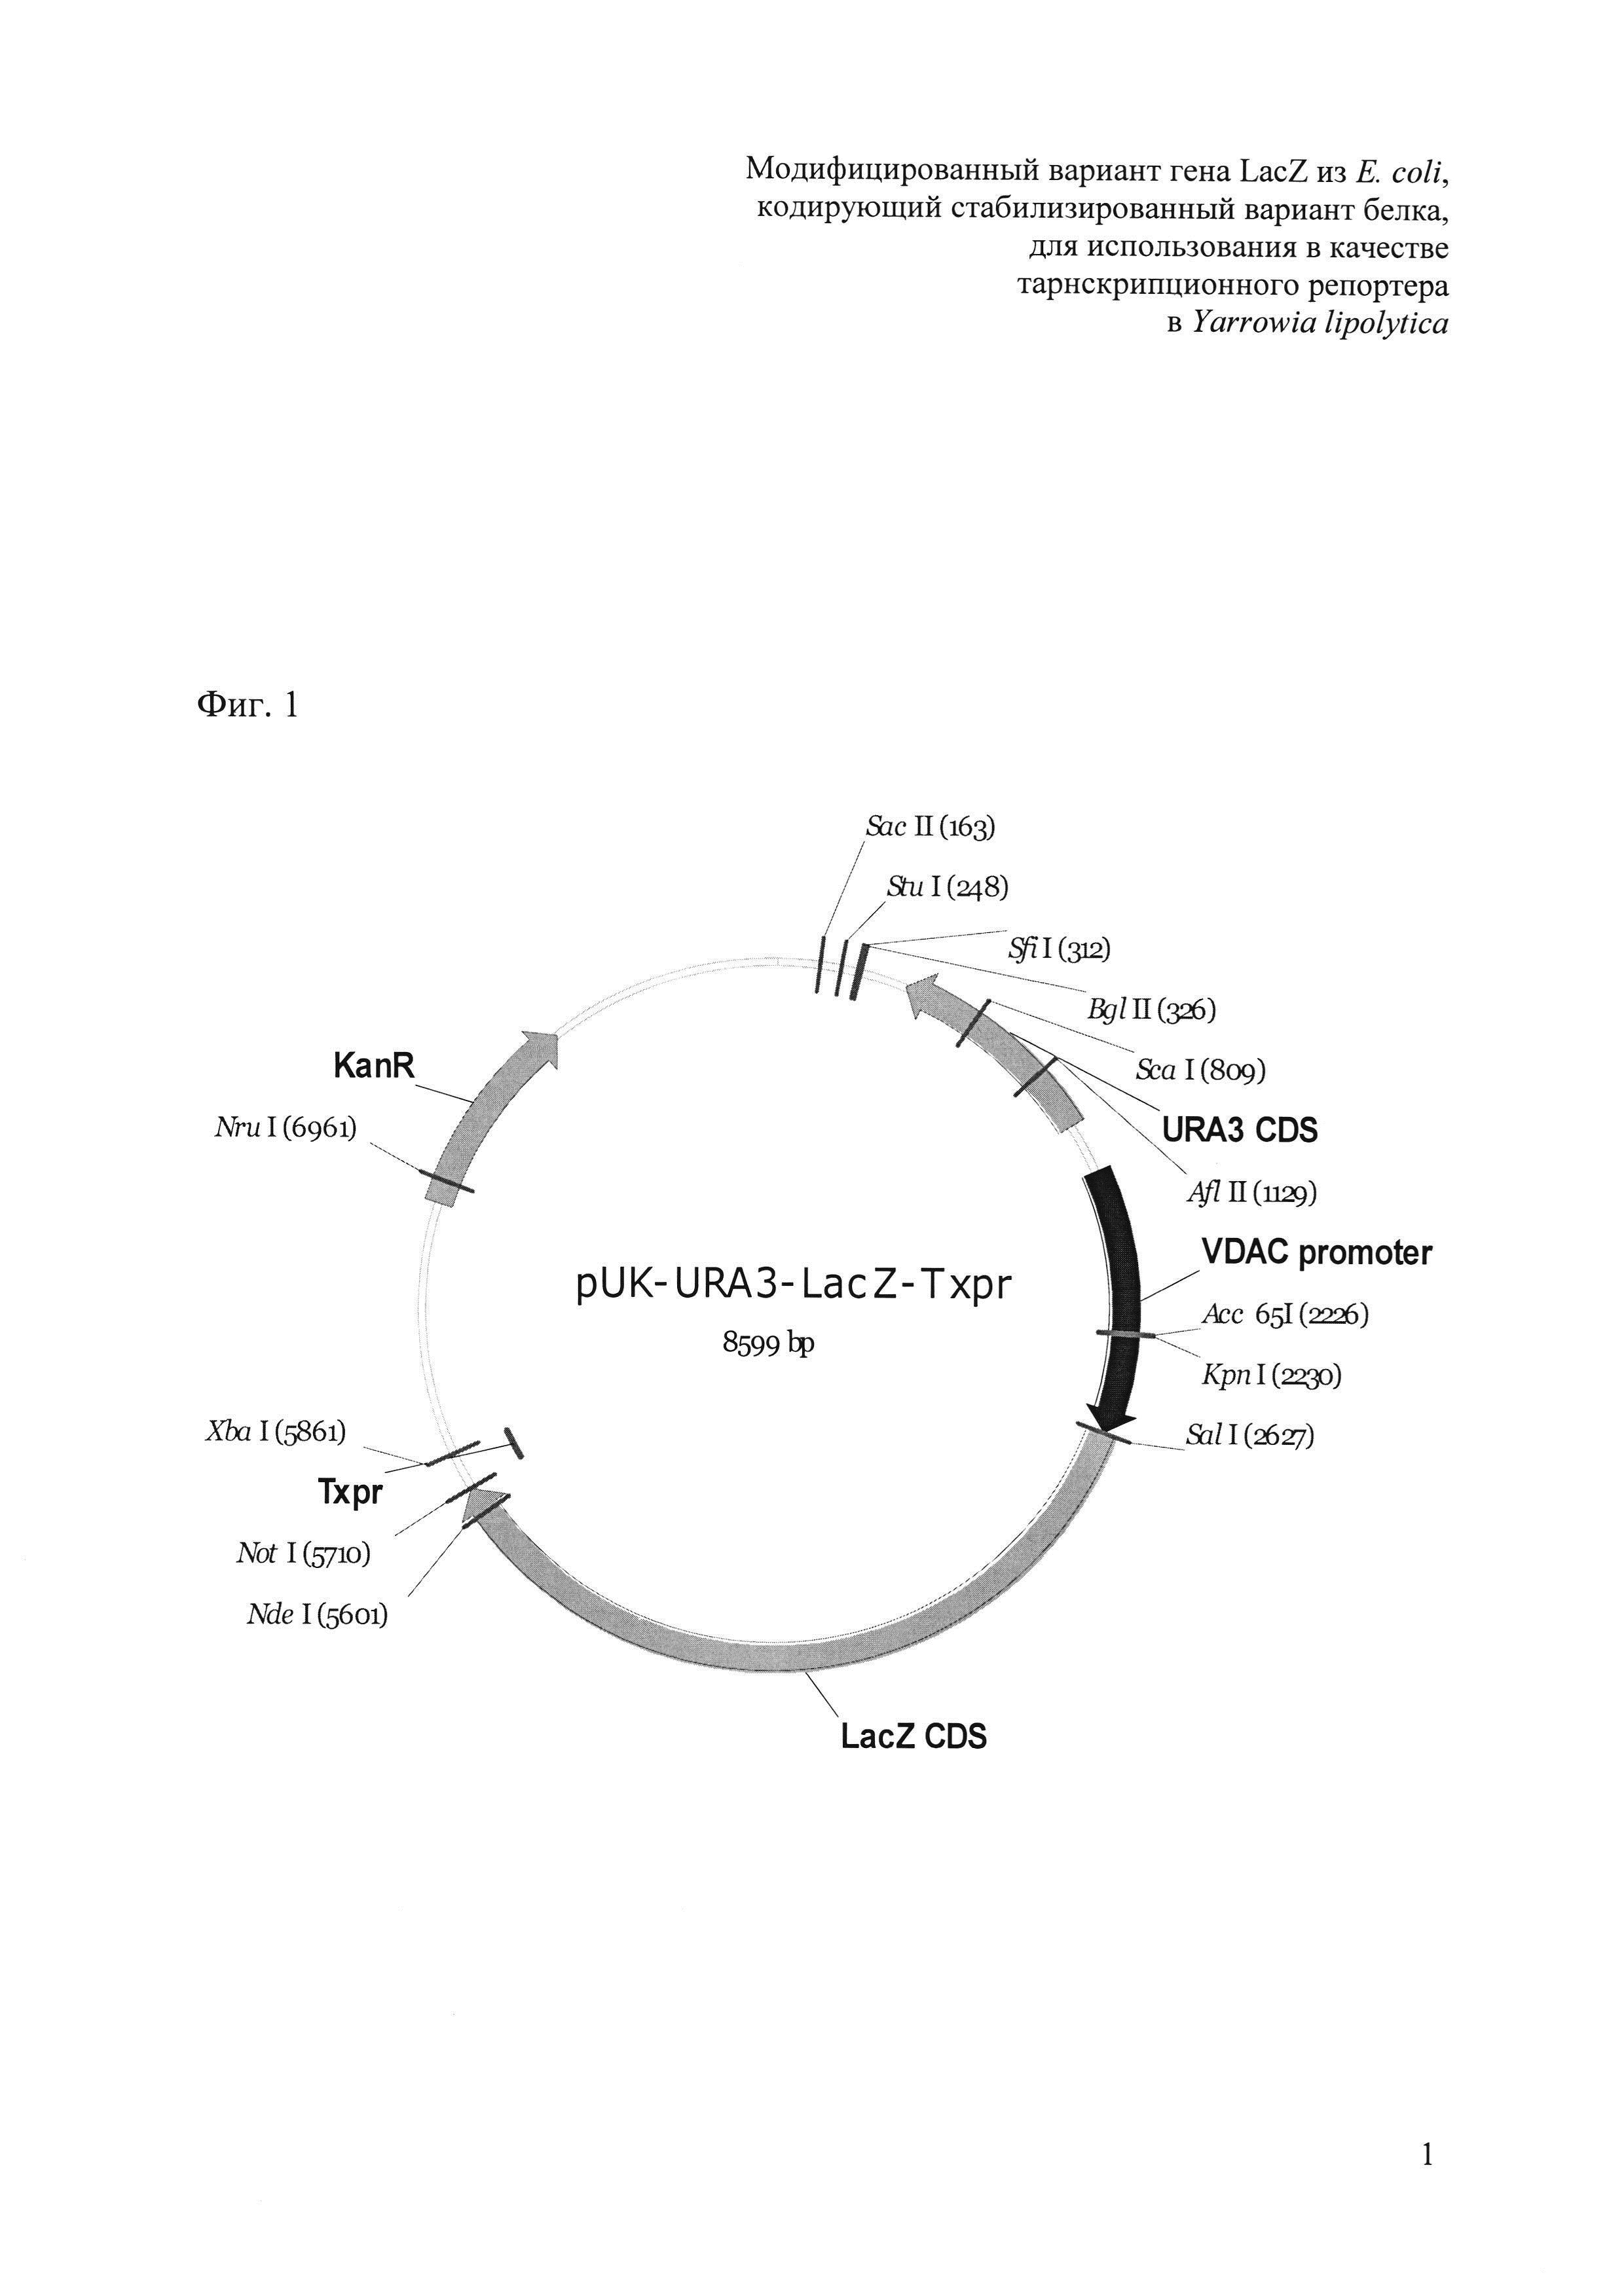 Модифицированный вариант гена LacZ из E. coli, кодирующий стабилизированный вариант белка, для использования в качестве транскрипционного репортера в Yarrowia lipolytica